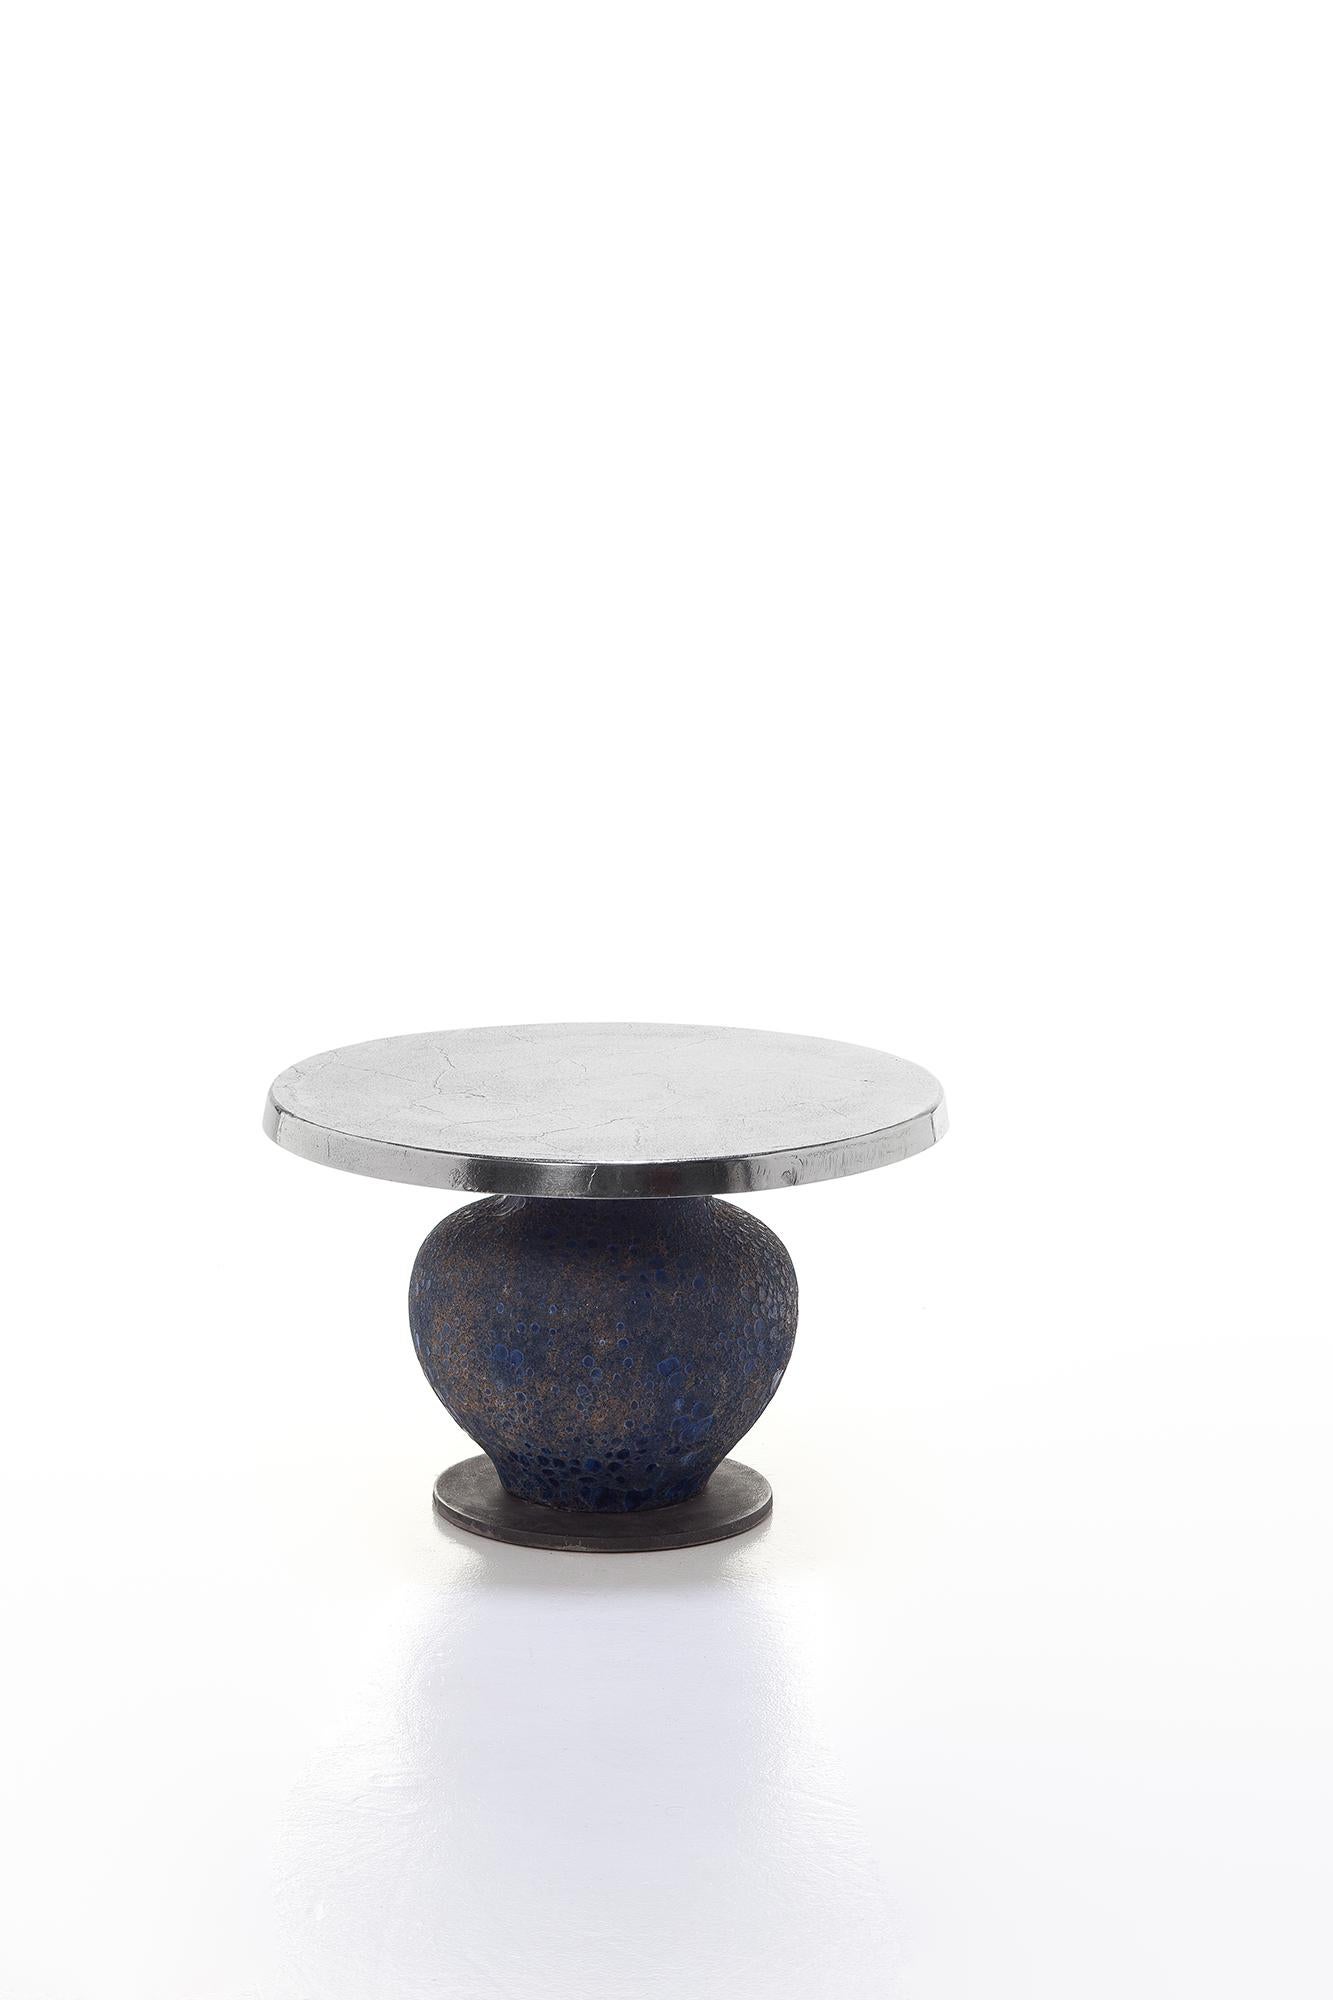 La famille de tables Moon 39/40/42 se distingue par une audacieuse combinaison de matériaux : disponibles en différentes tailles, elles sont dotées d'une base en céramique bleue en forme d'amphore, plus ou moins allongée selon la hauteur du produit,